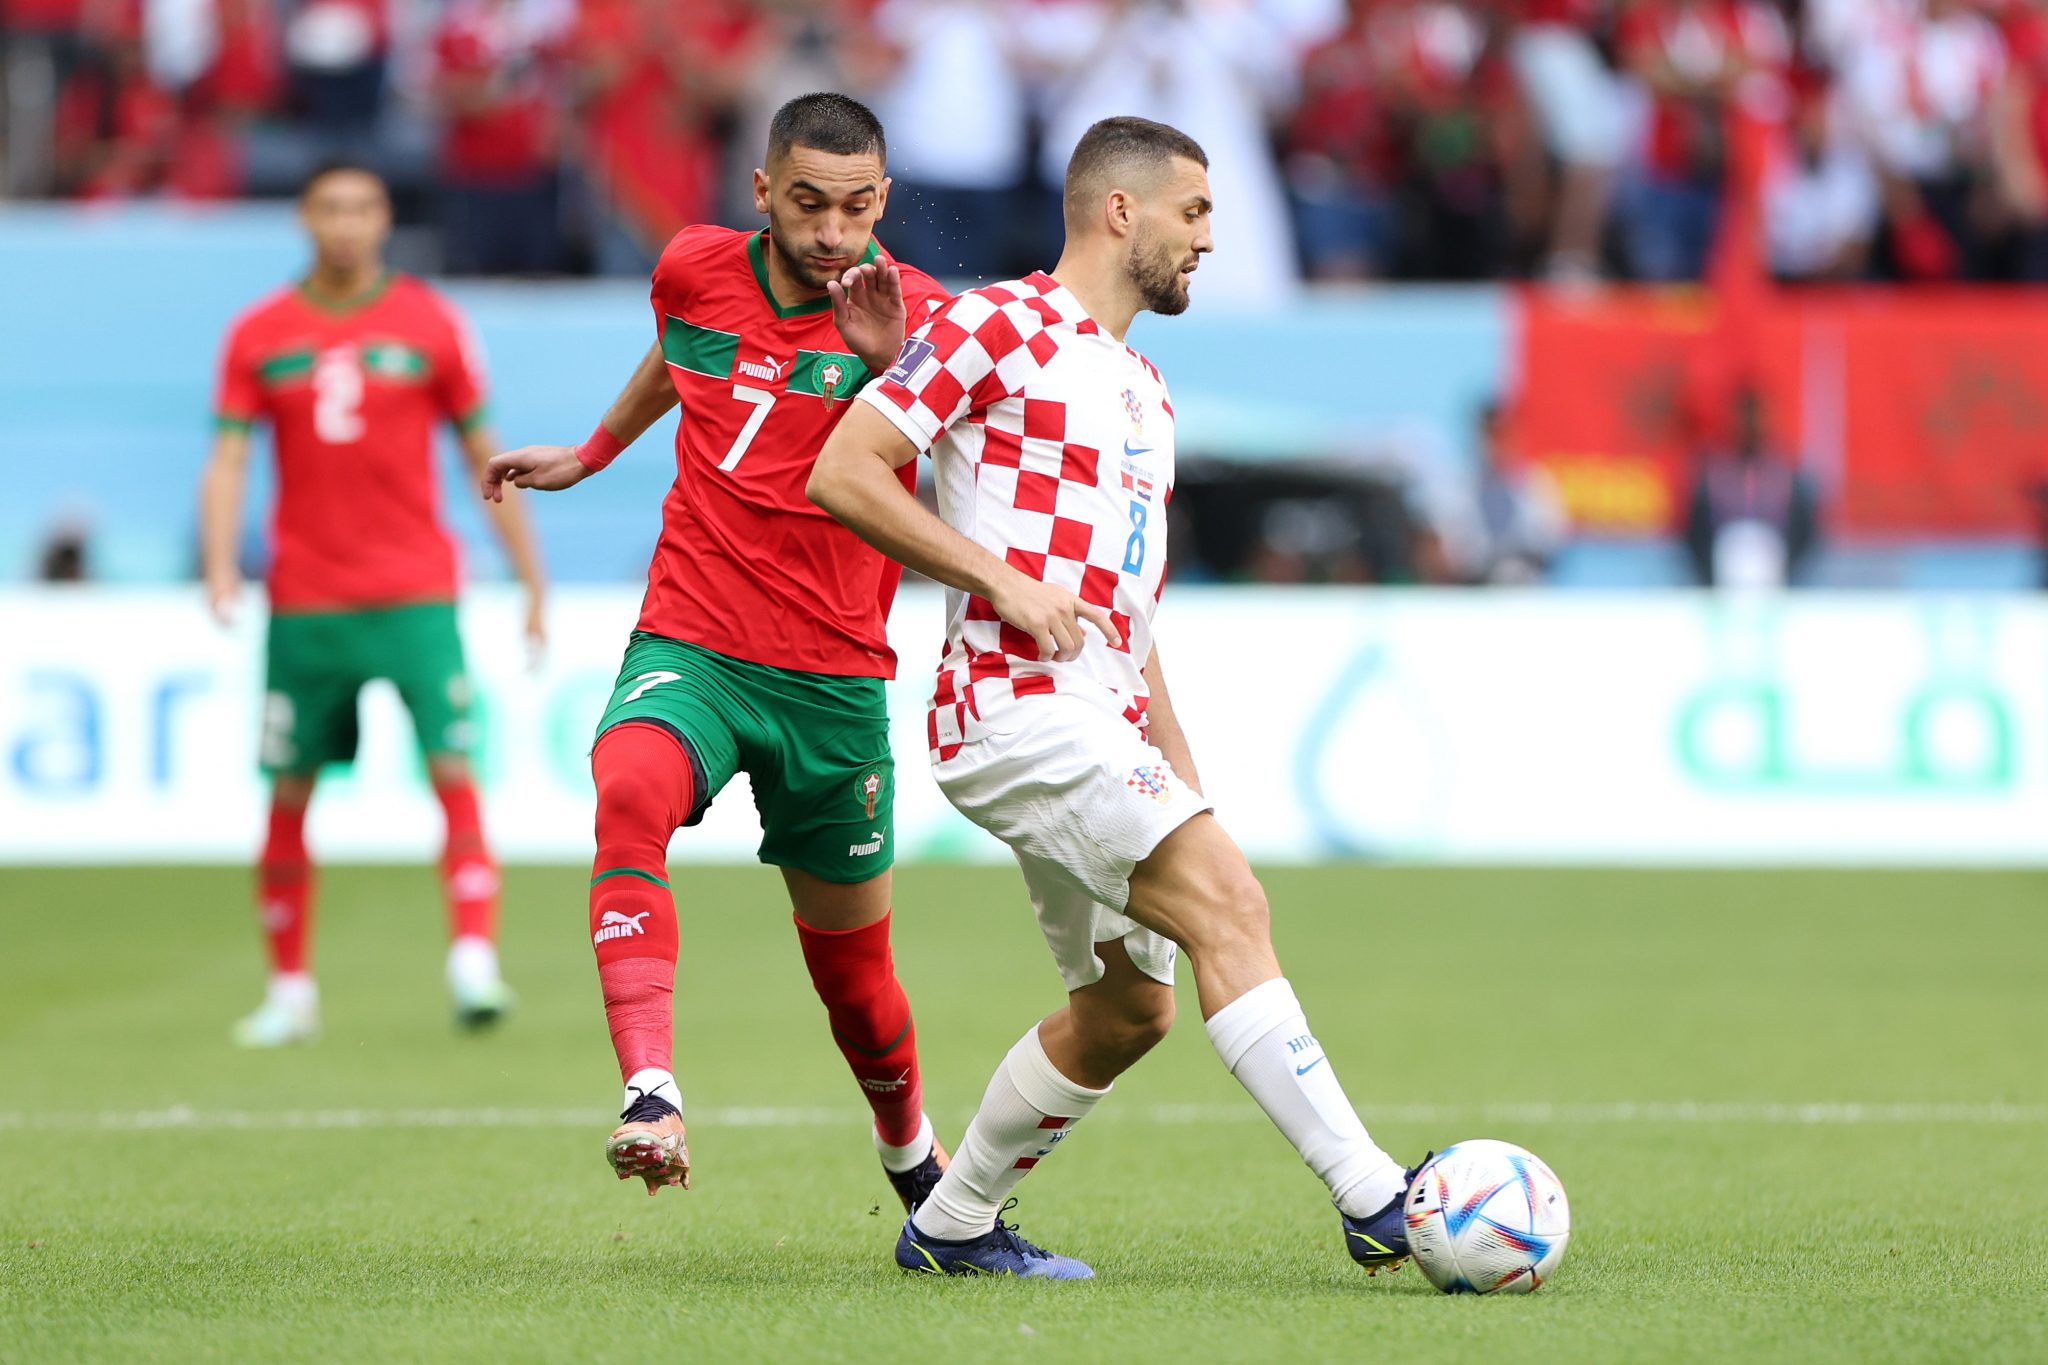 Μουντιάλ 2022: Κροατία vs Μαρόκο, αγώνας γοήτρου για μια θέση στο βάθρο